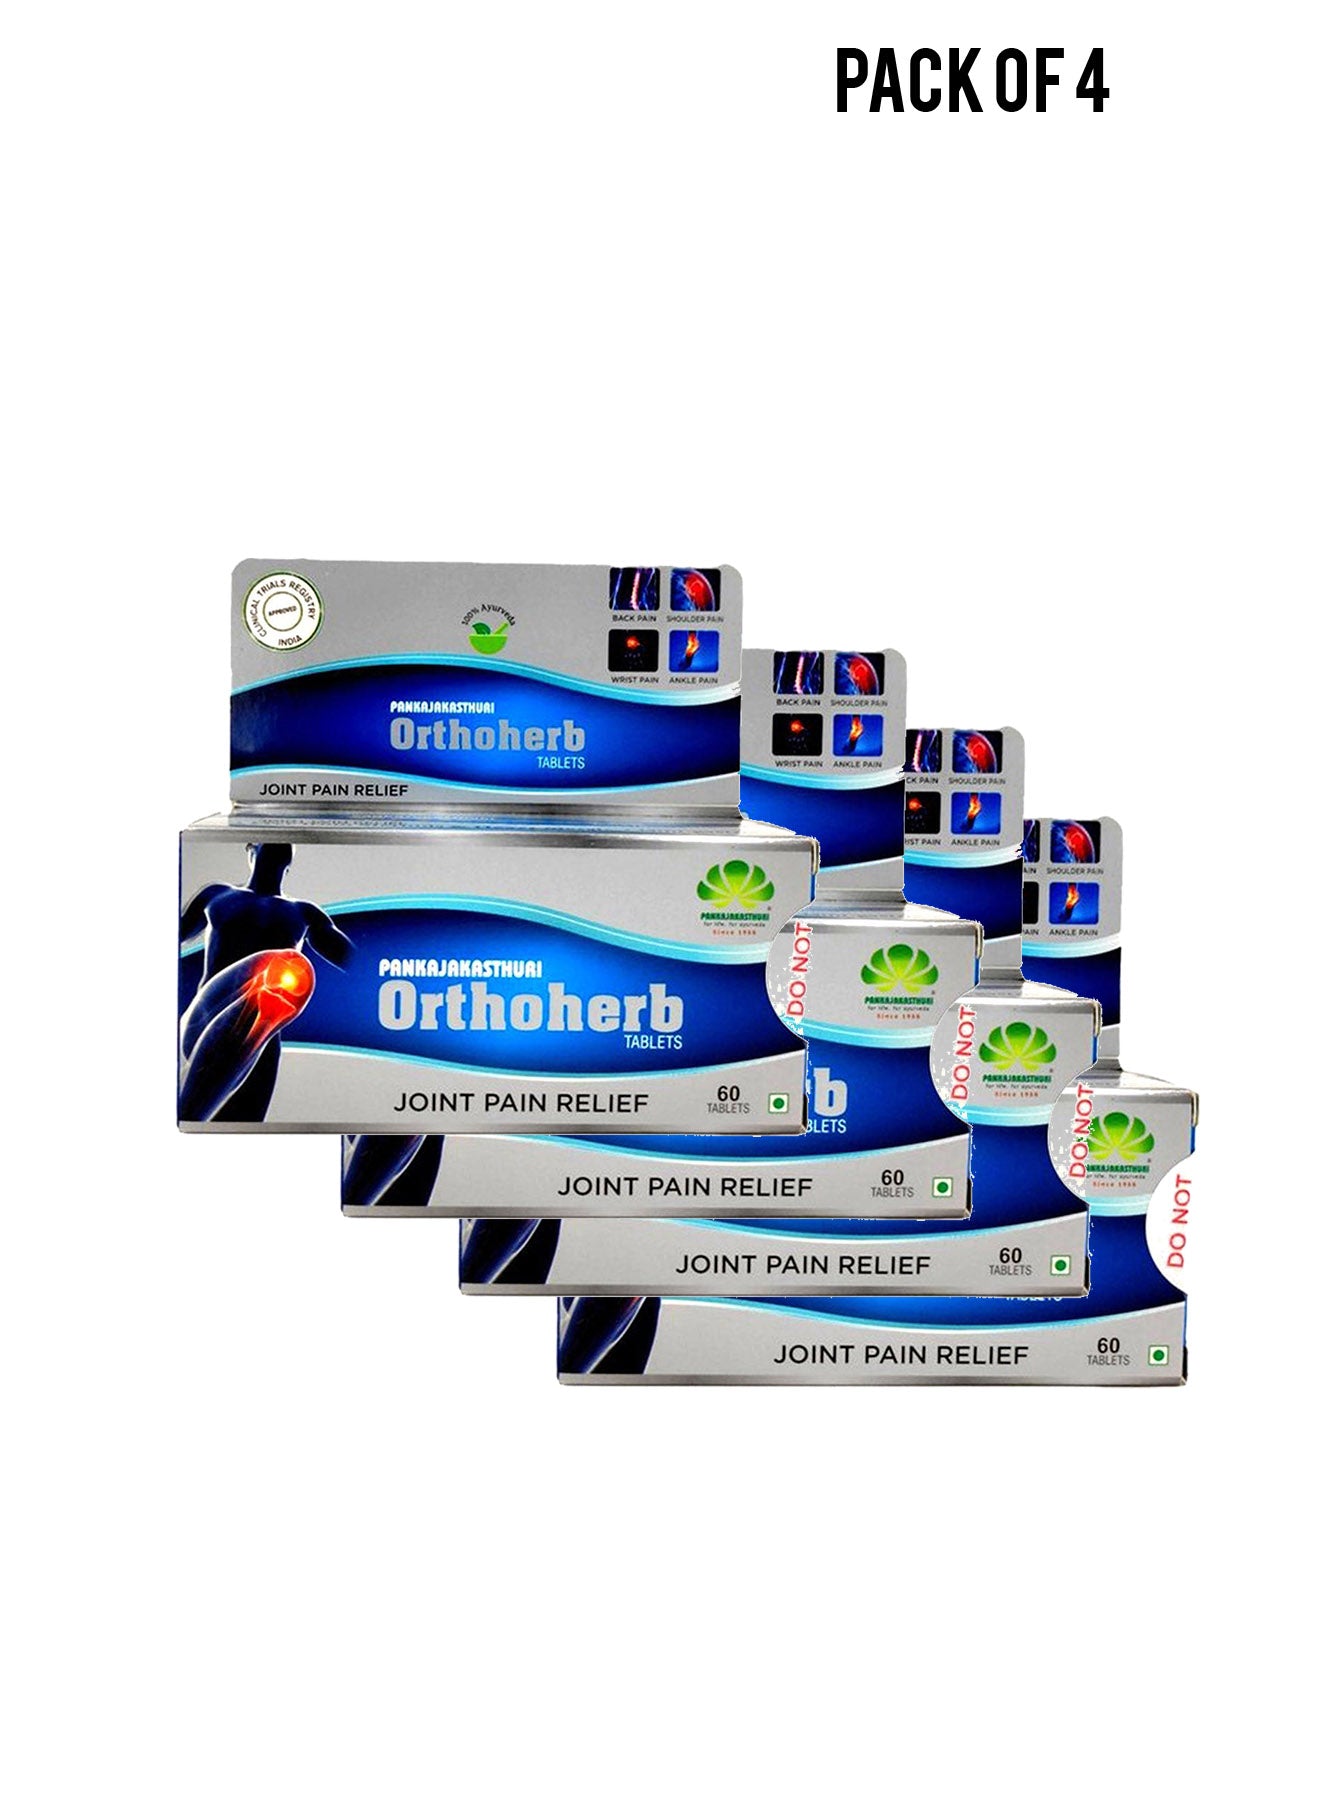 Pankajakasthuri Orthoherb 60 Tablets Value Pack of 4 